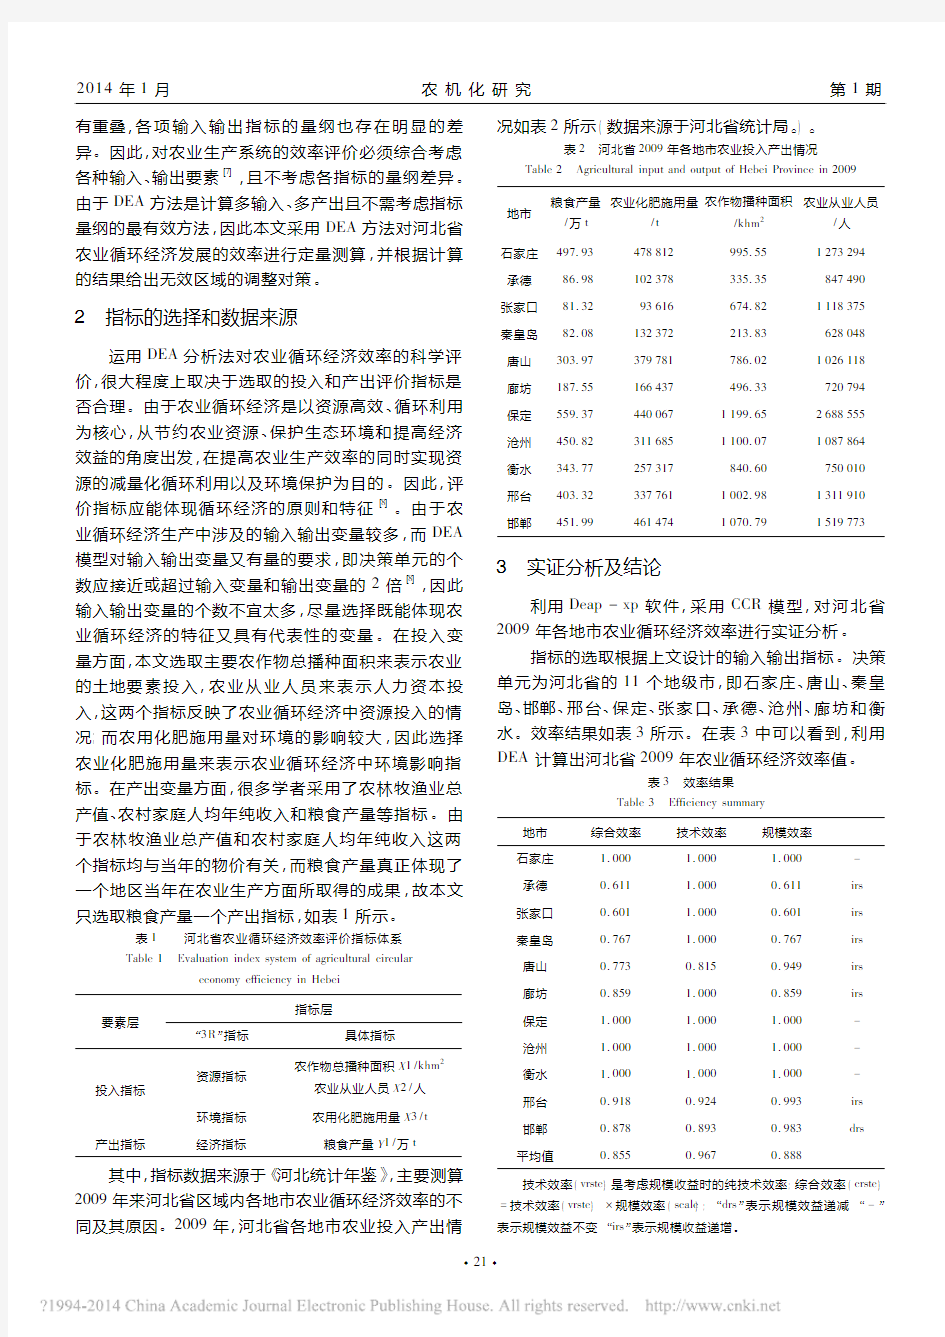 基于DEA的河北省农业循环经济效率评价研究_赵瑞芬王殿茹